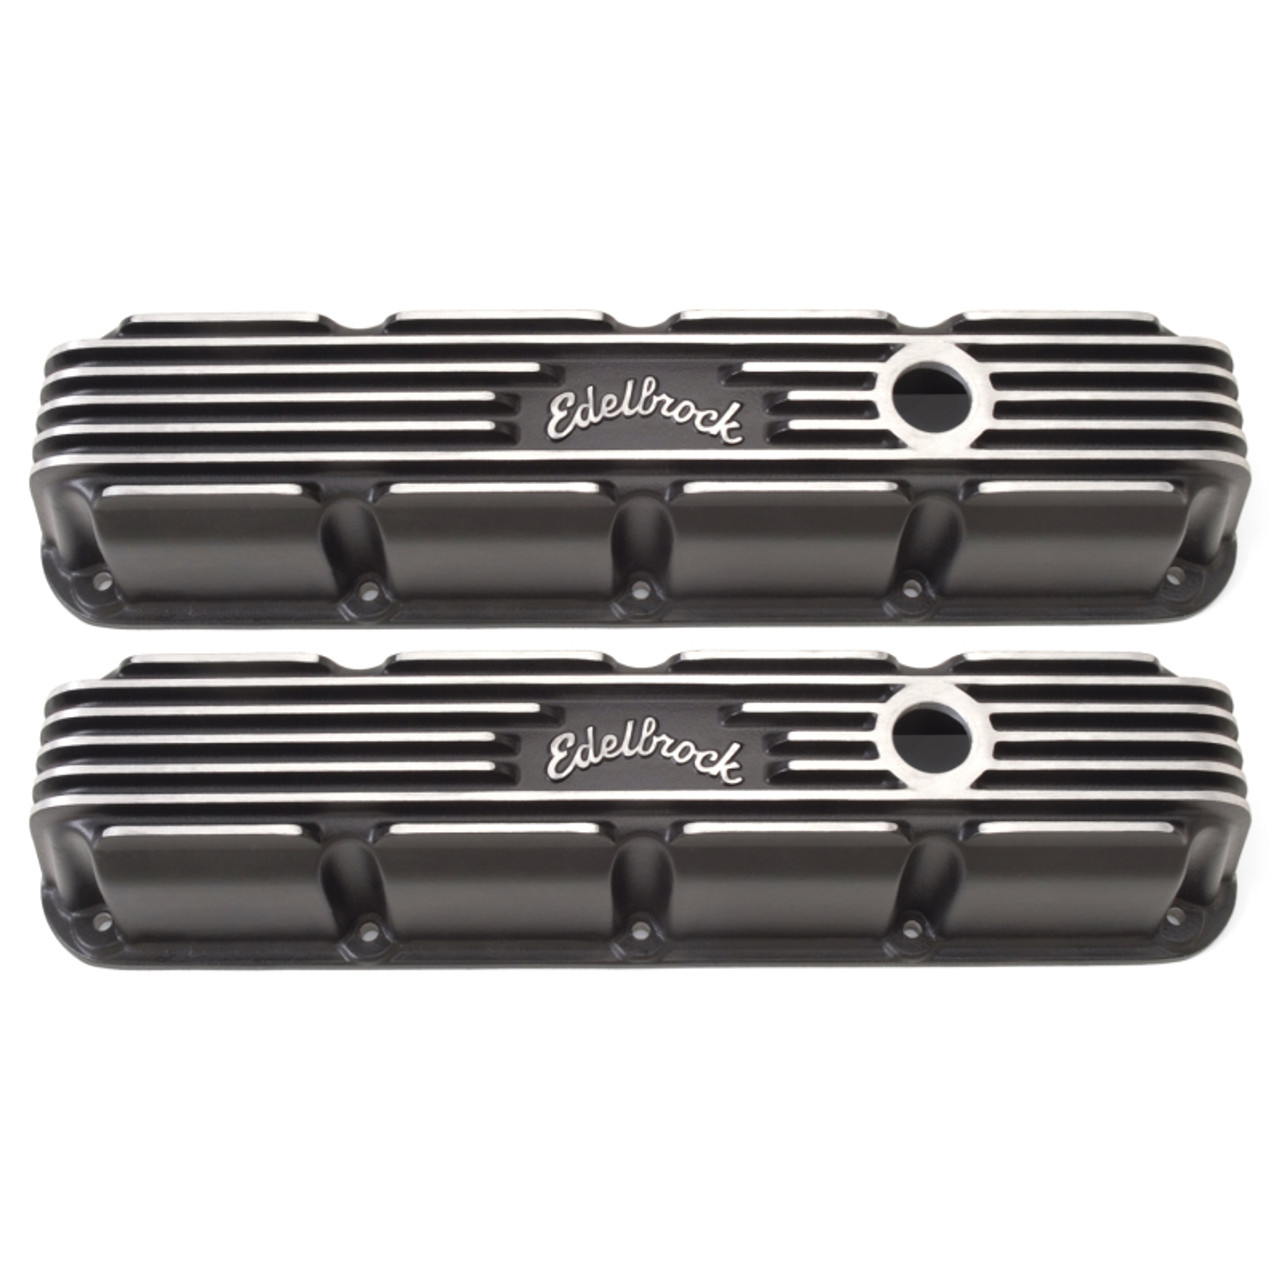 Buy Edelbrock Valve Cover Classic Series Chrysler Magnum V8 Black 41773  for 375.6 at Armageddon Turbo  Performance